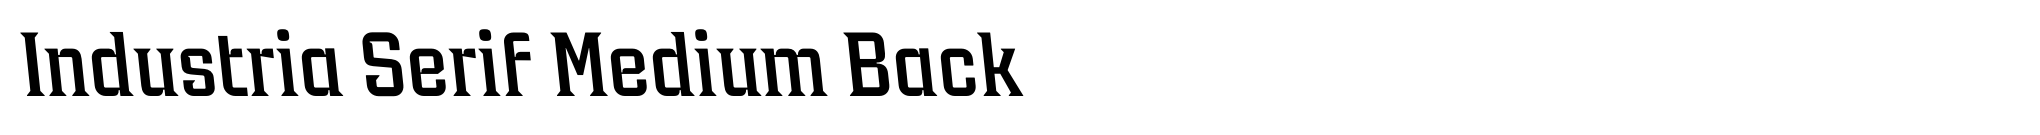 Industria Serif Medium Back image